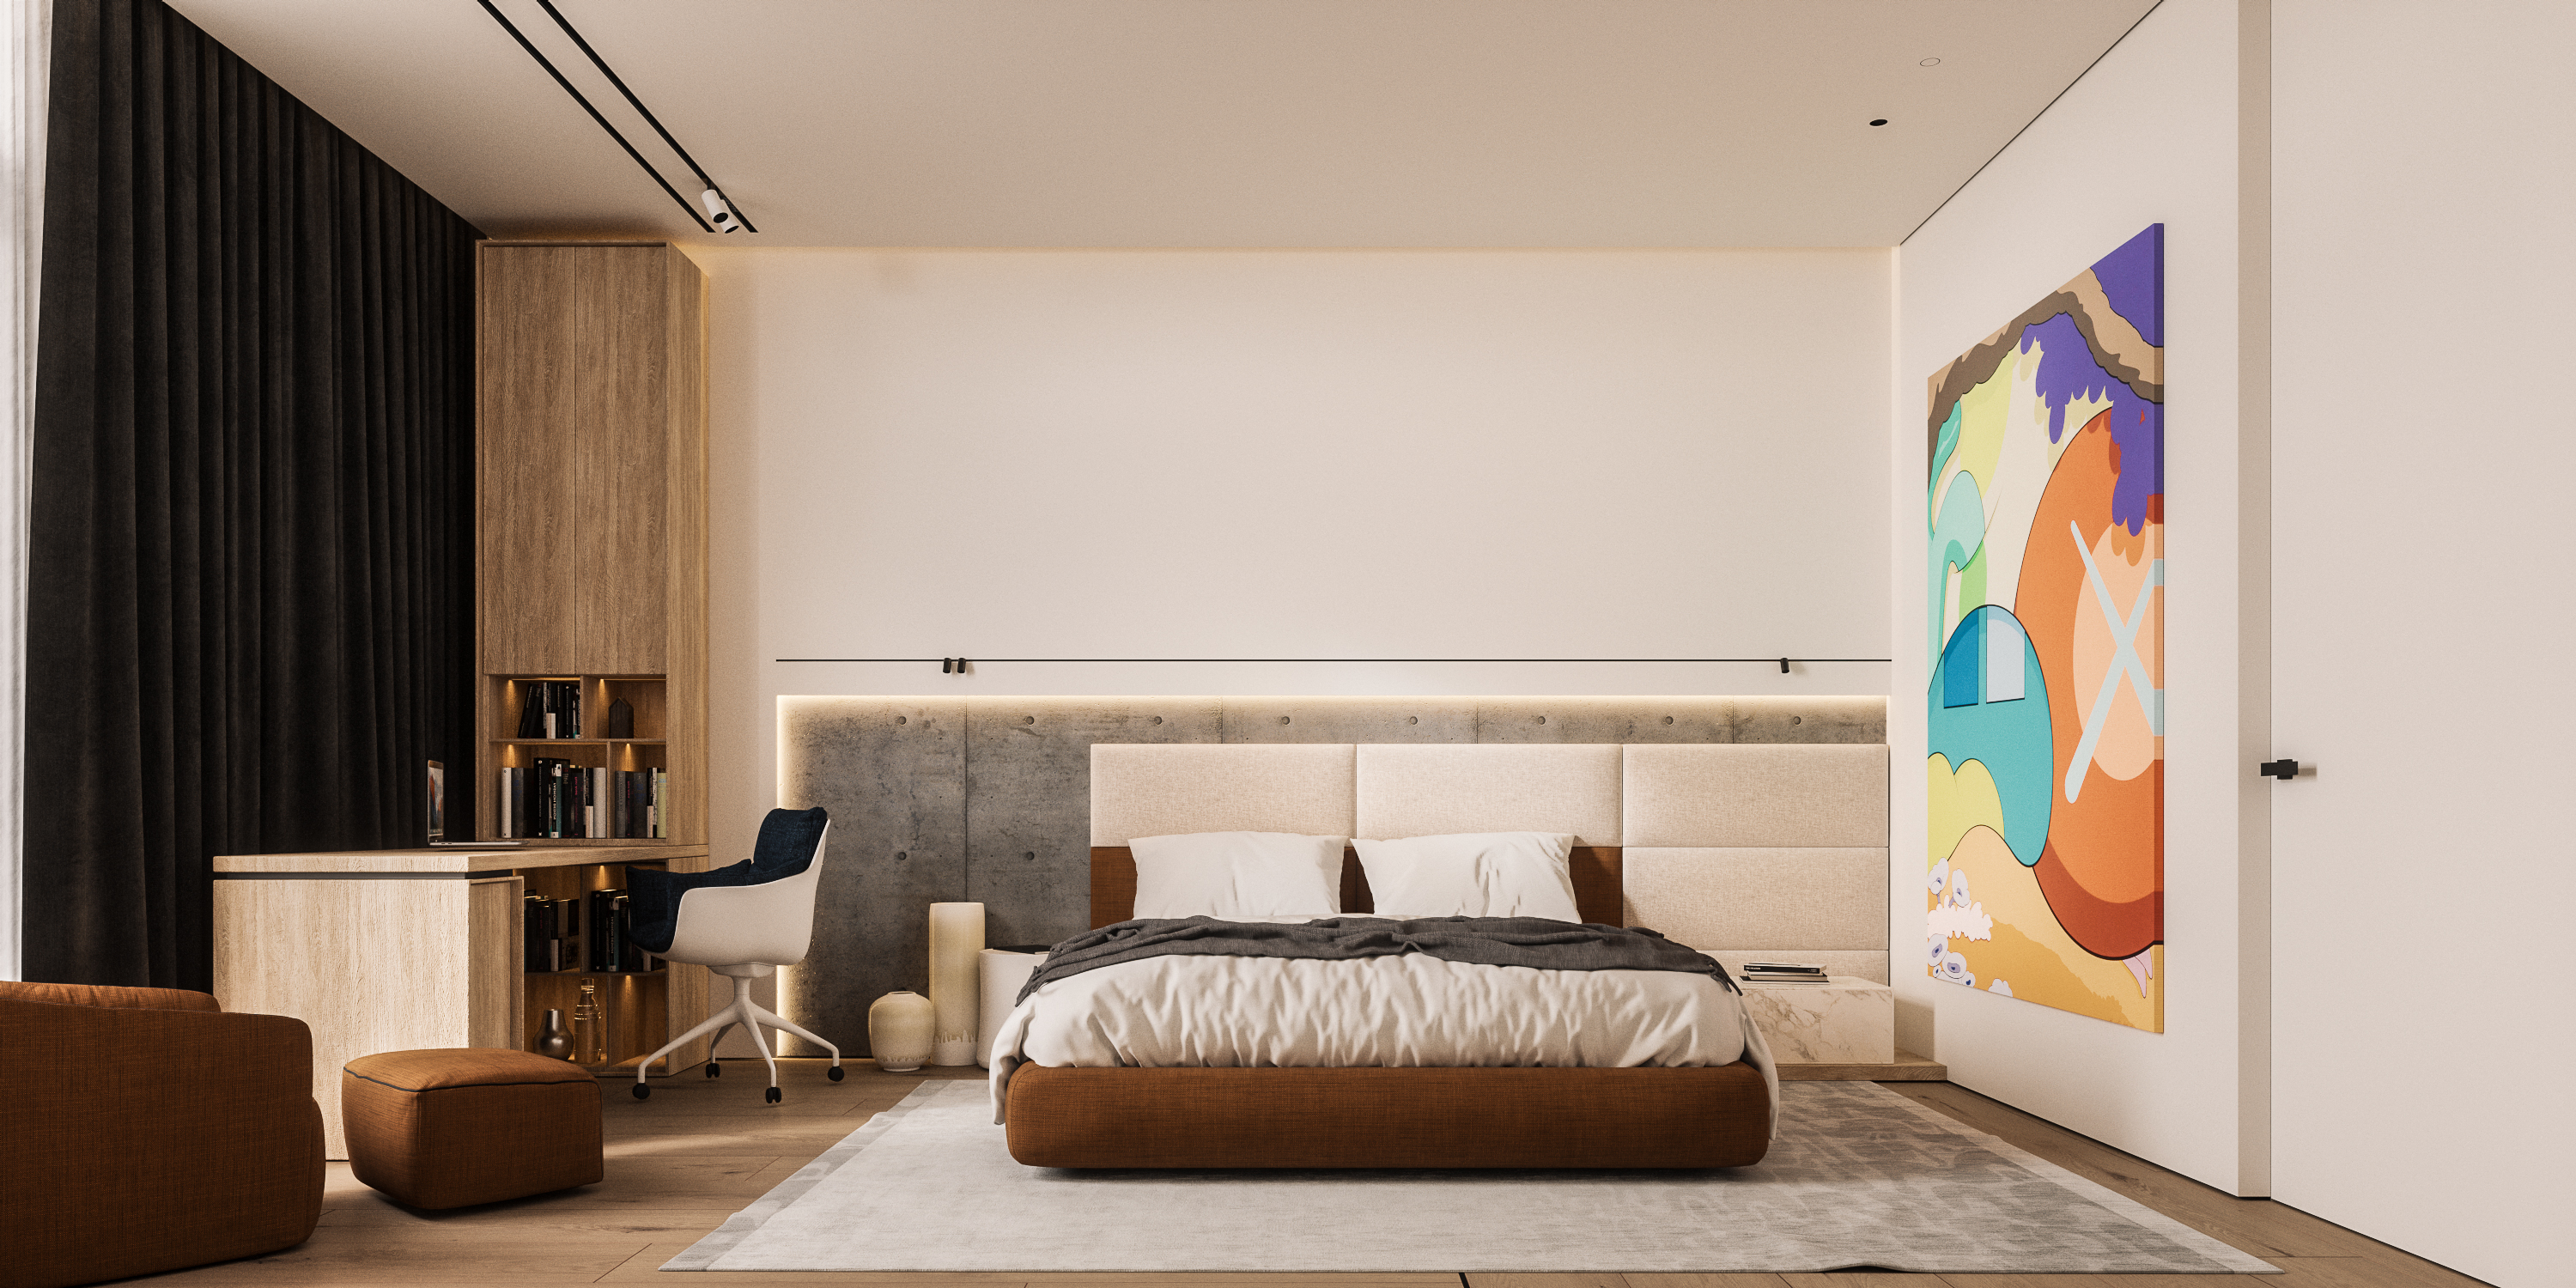 Bucharest Penthouse Interior Design - Modern Bedroom - Hype Project - arh. Adrian Ianculescu (1)